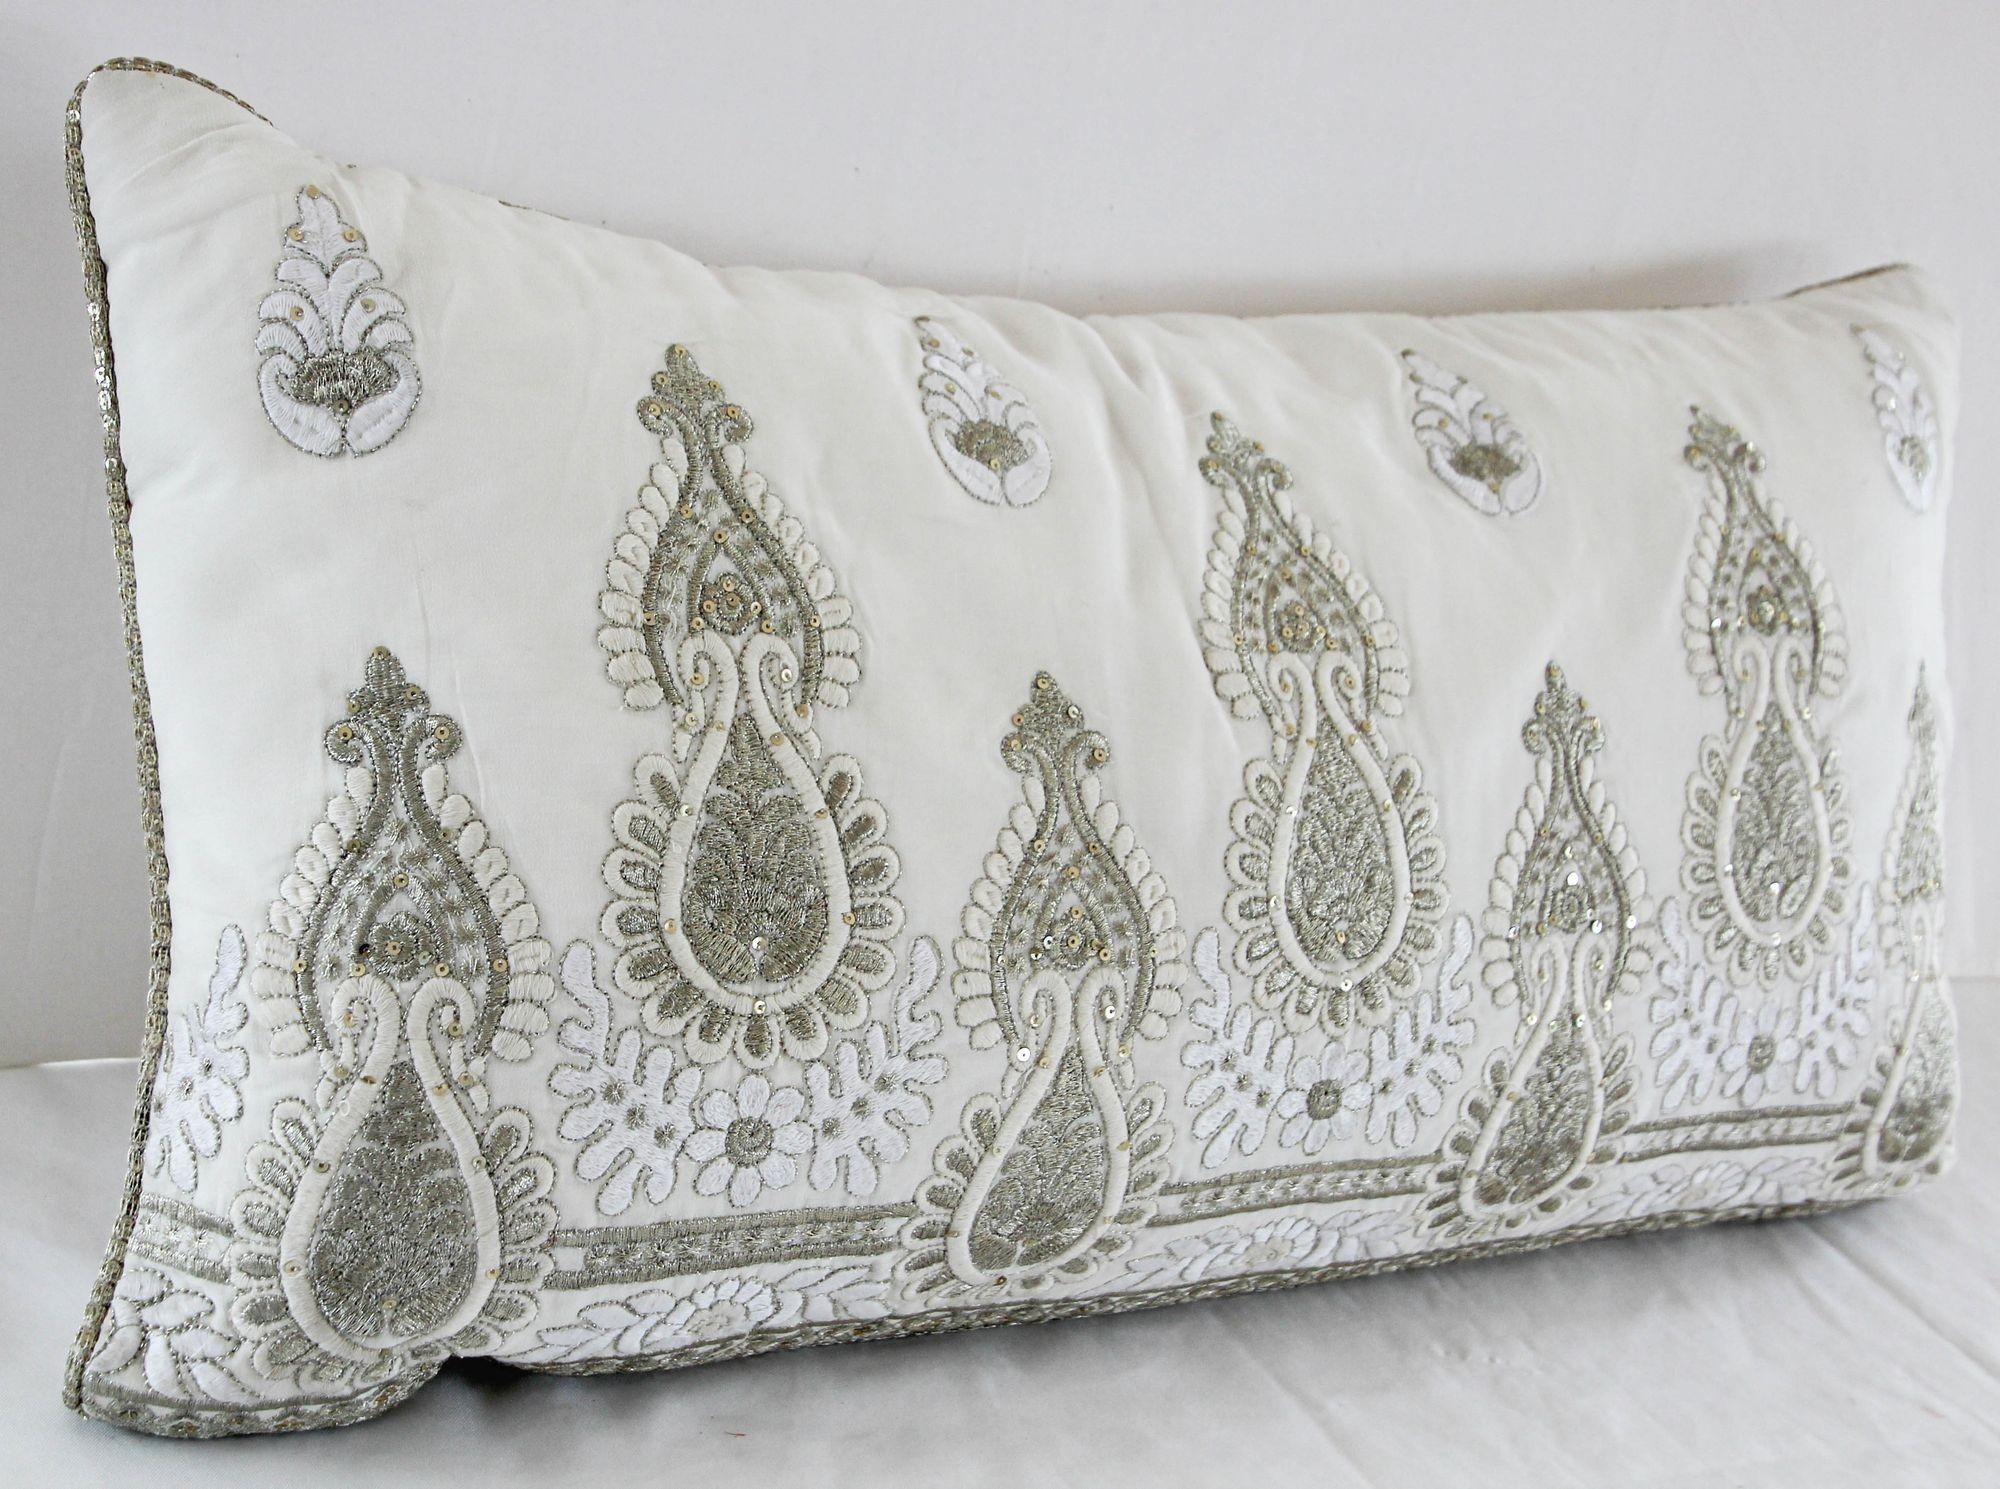 Weißes und silberfarbenes, besticktes Kissen im Mughal-Stil.
Handgesticktes luxuriöses Damast 26-Zoll Lendenwirbelkissen.
Kissen aus weißer Dupionseide, bestickt mit Silberfäden und Perlen im maurischen Stil.
Dekoratives weißes Lendenkissen,